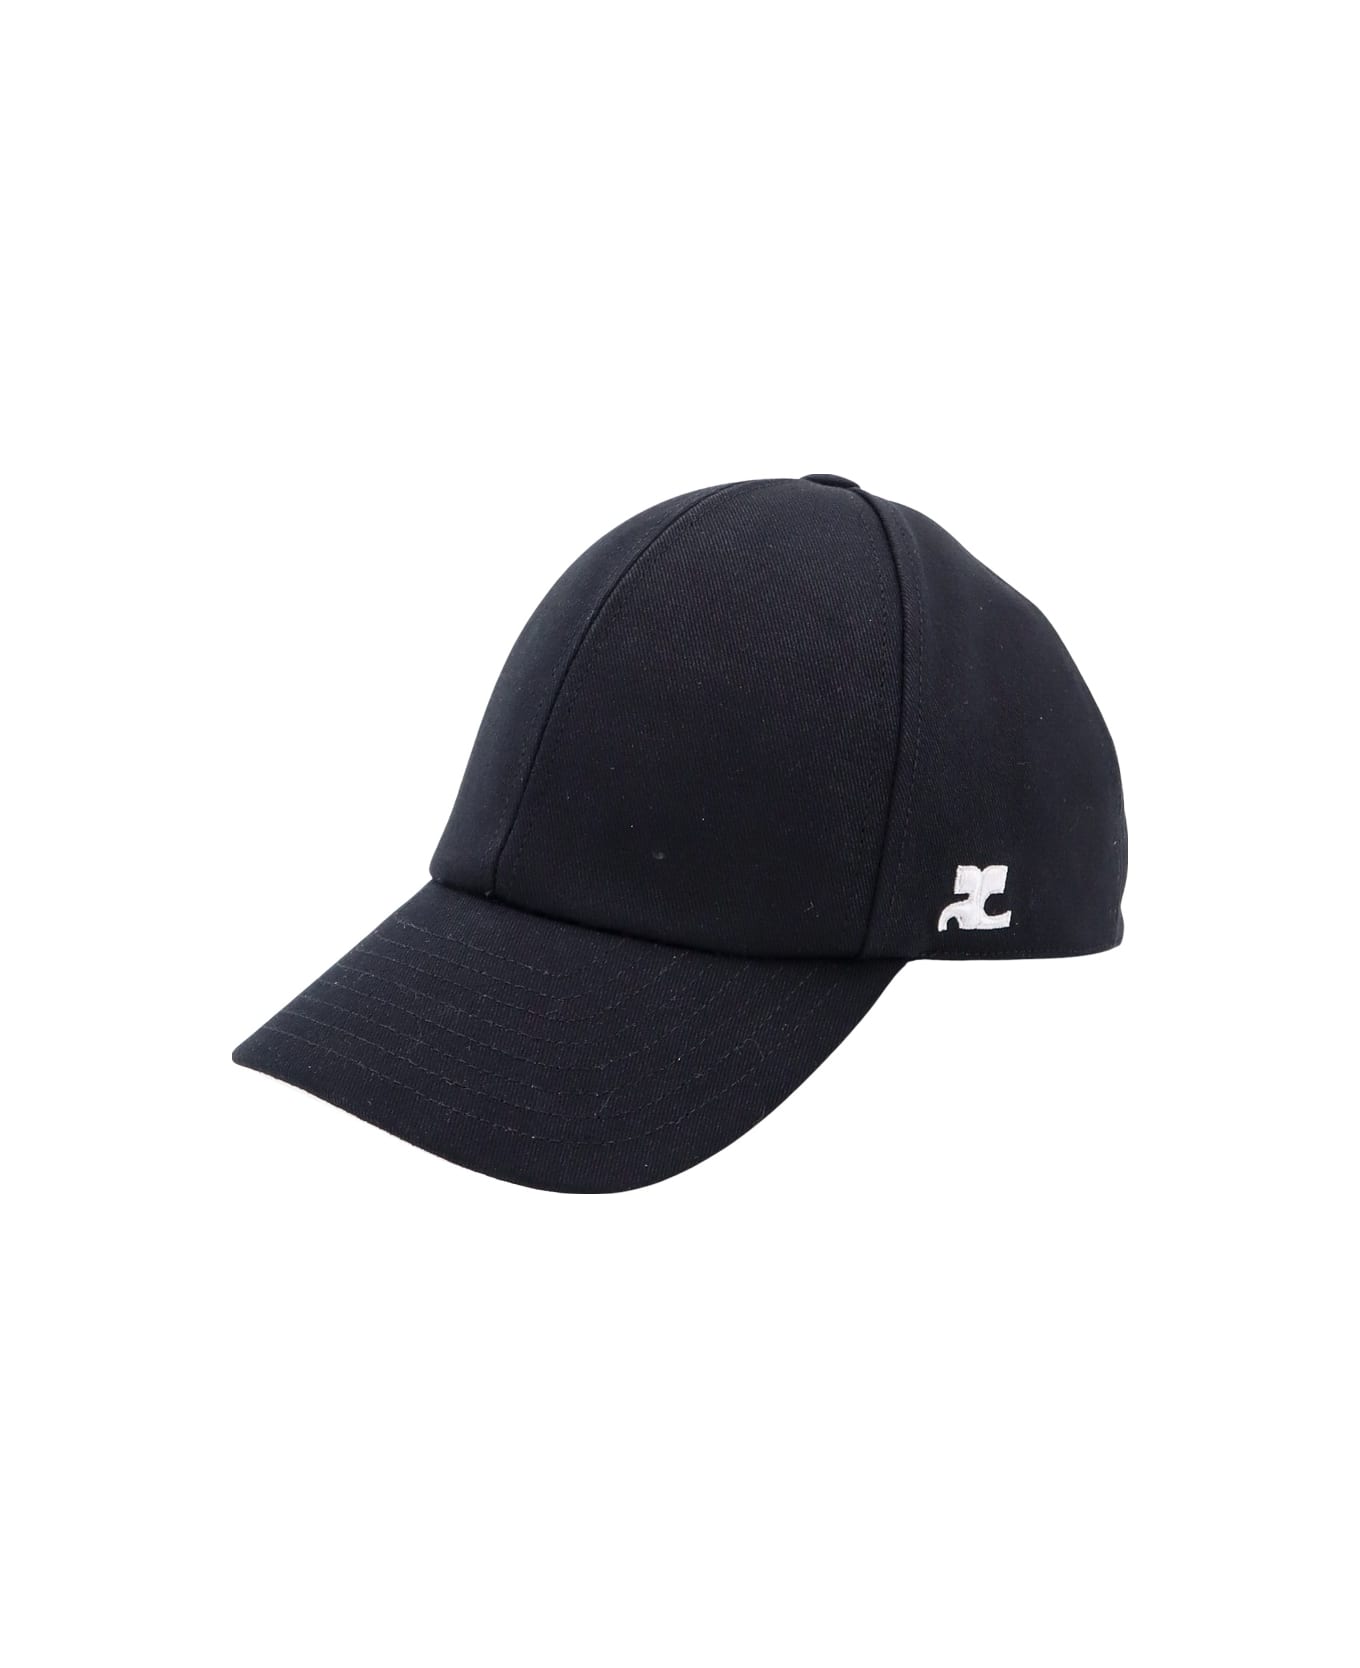 Courrèges Hat - Black